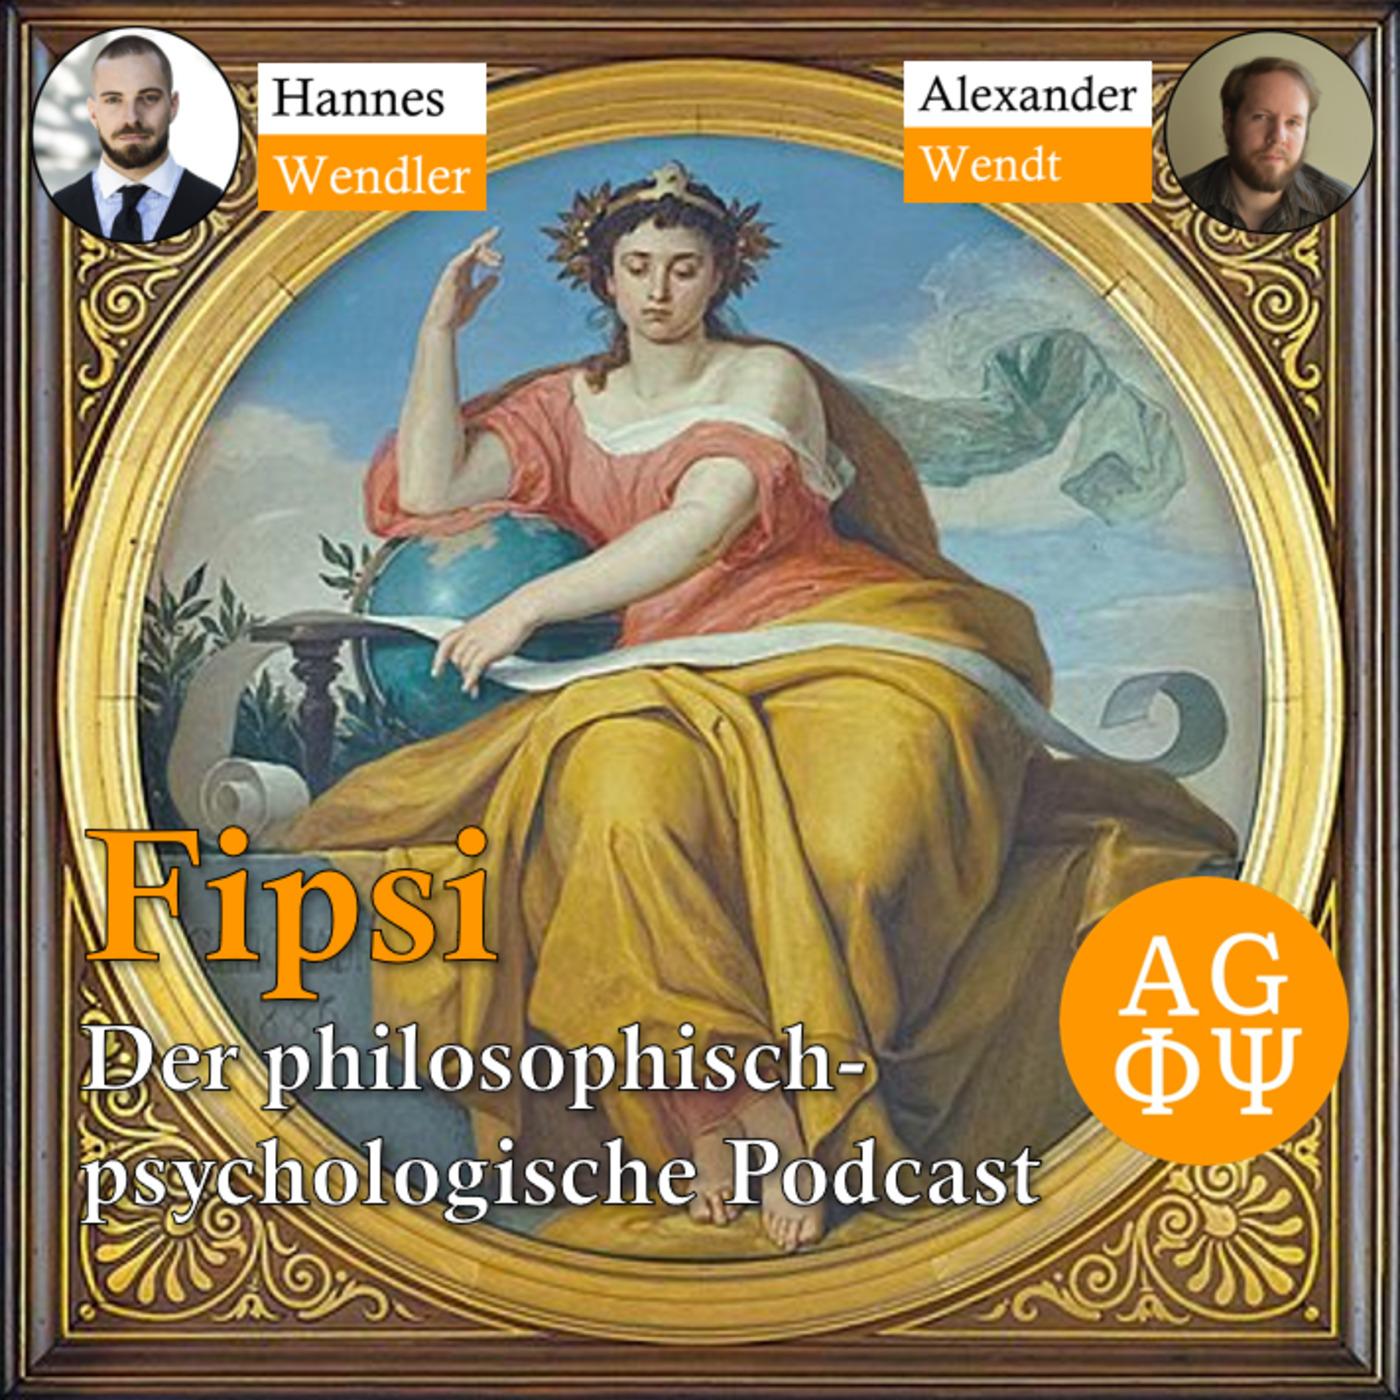 Fipsi: Der philosophisch-psychologische Podcast